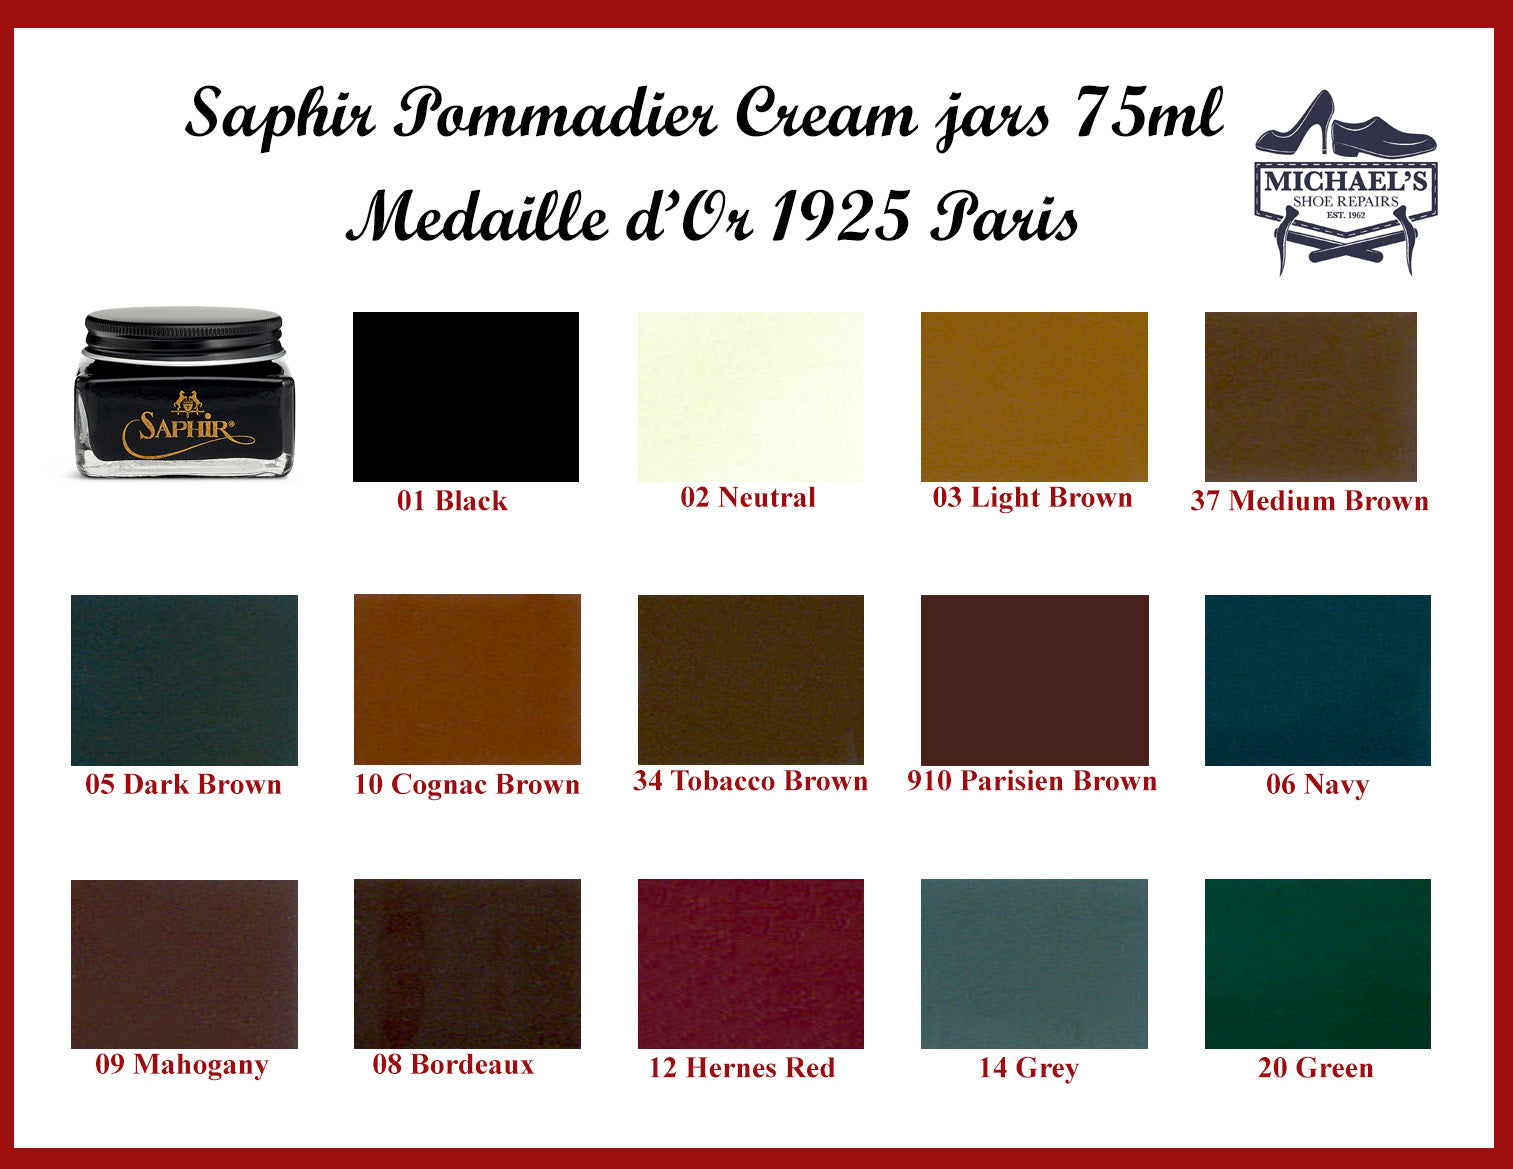 Saphir Medaille D'or Pommadier Cream 75ml - Cognac, Brown